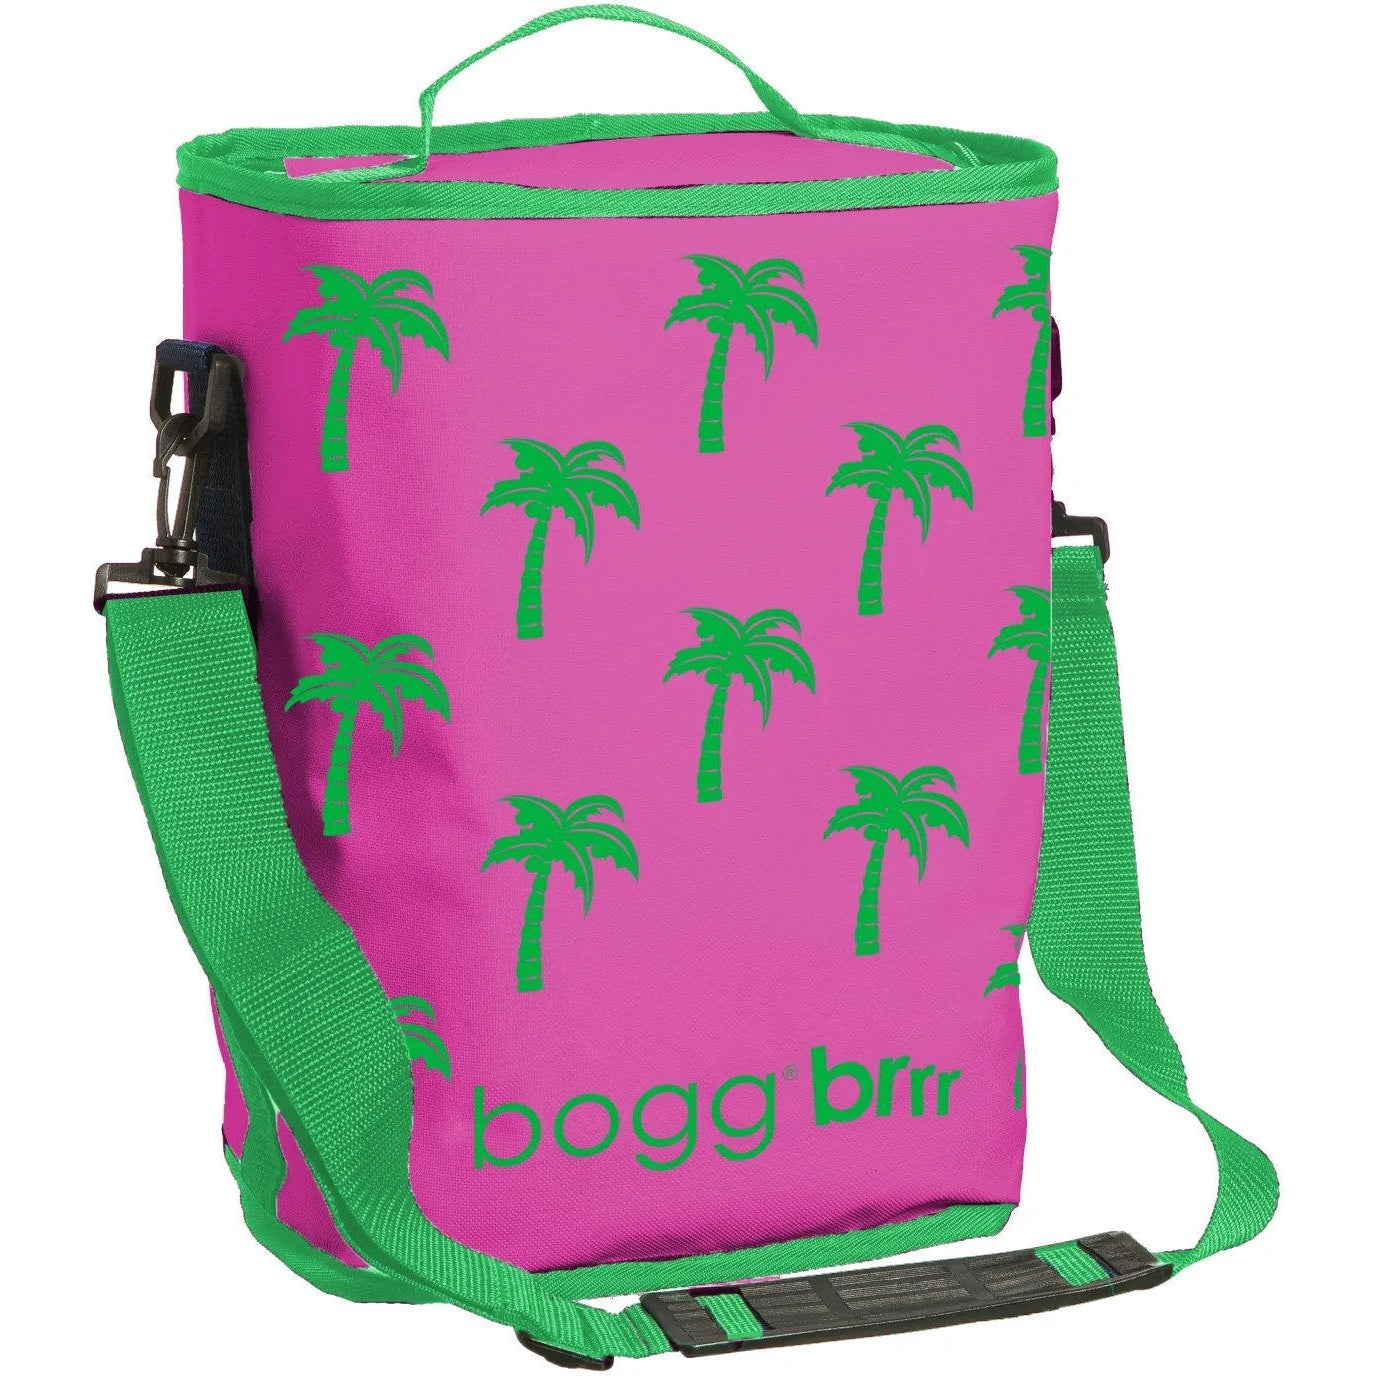 BOGG BAG, Bags